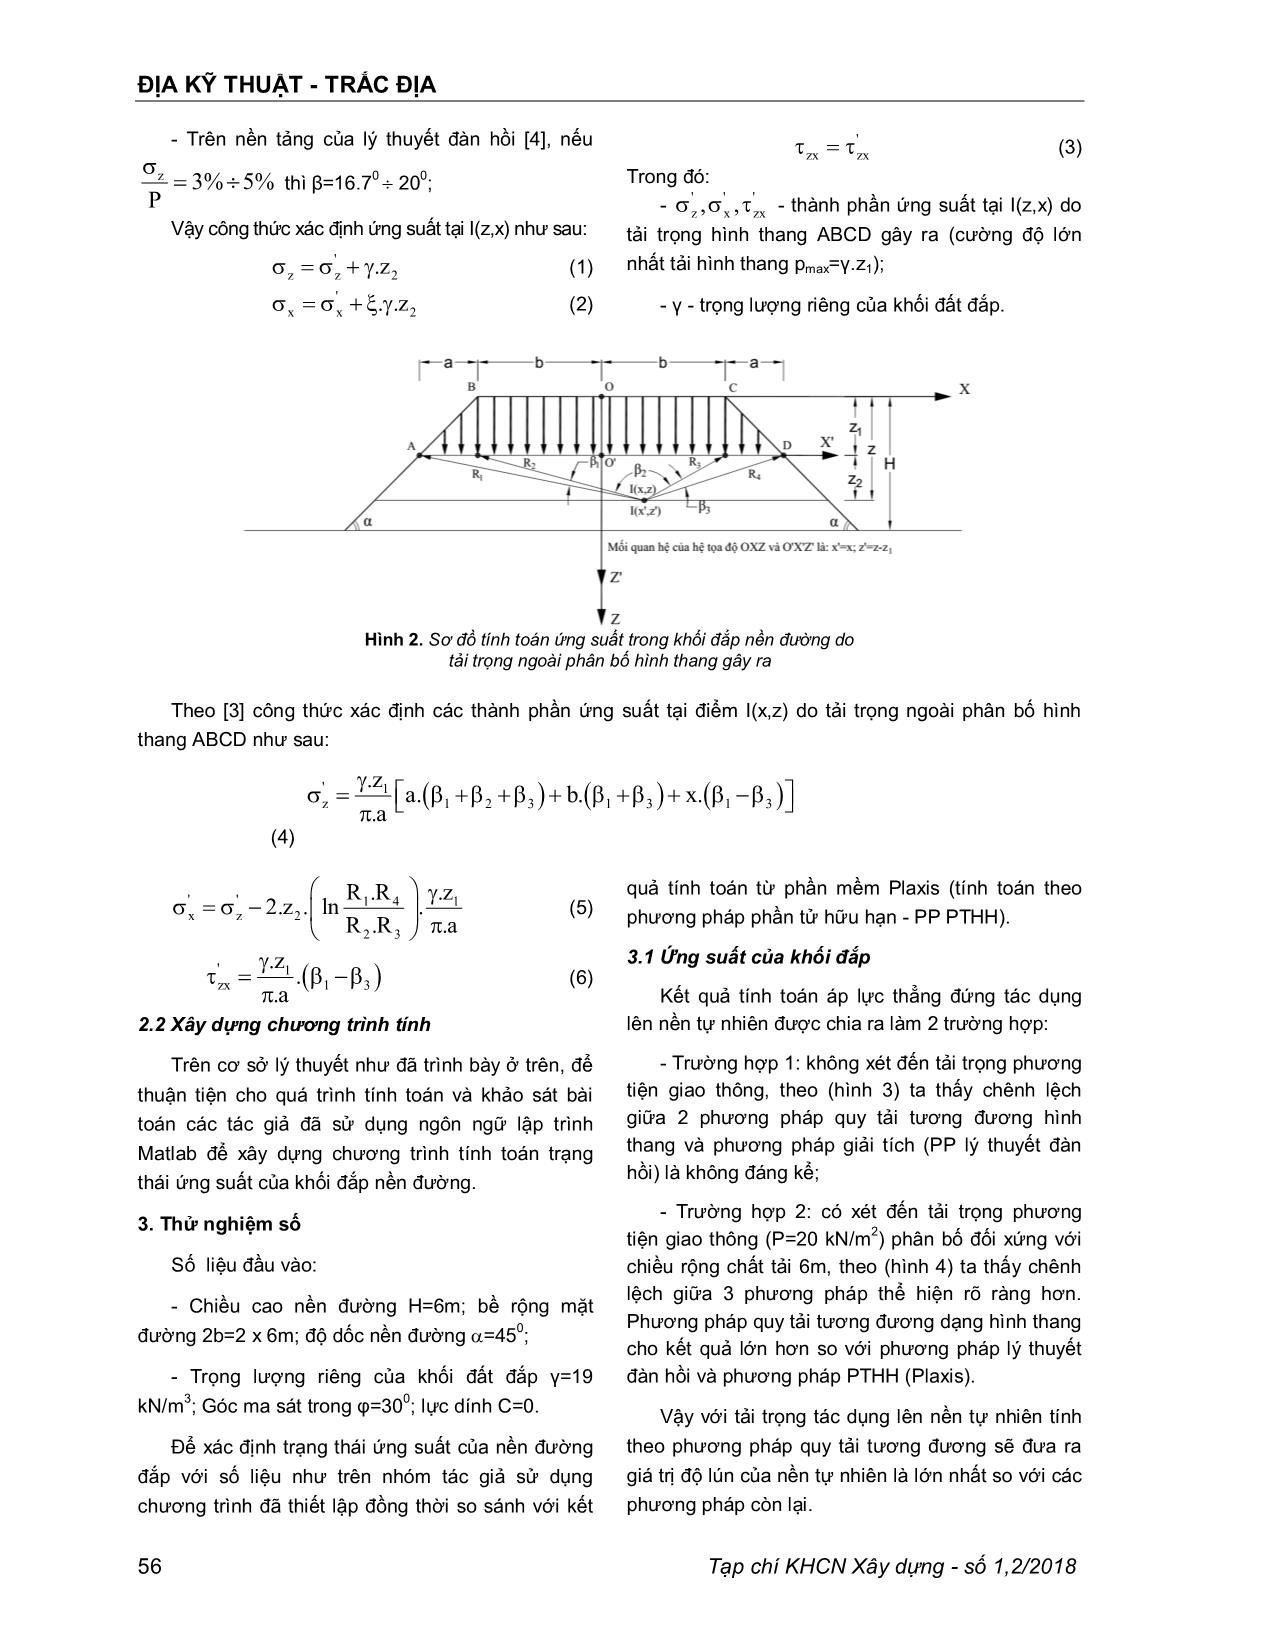 Phân tích trạng thái ứng suất của khối đắp nền đường theo lý thuyết đàn hồi trang 2